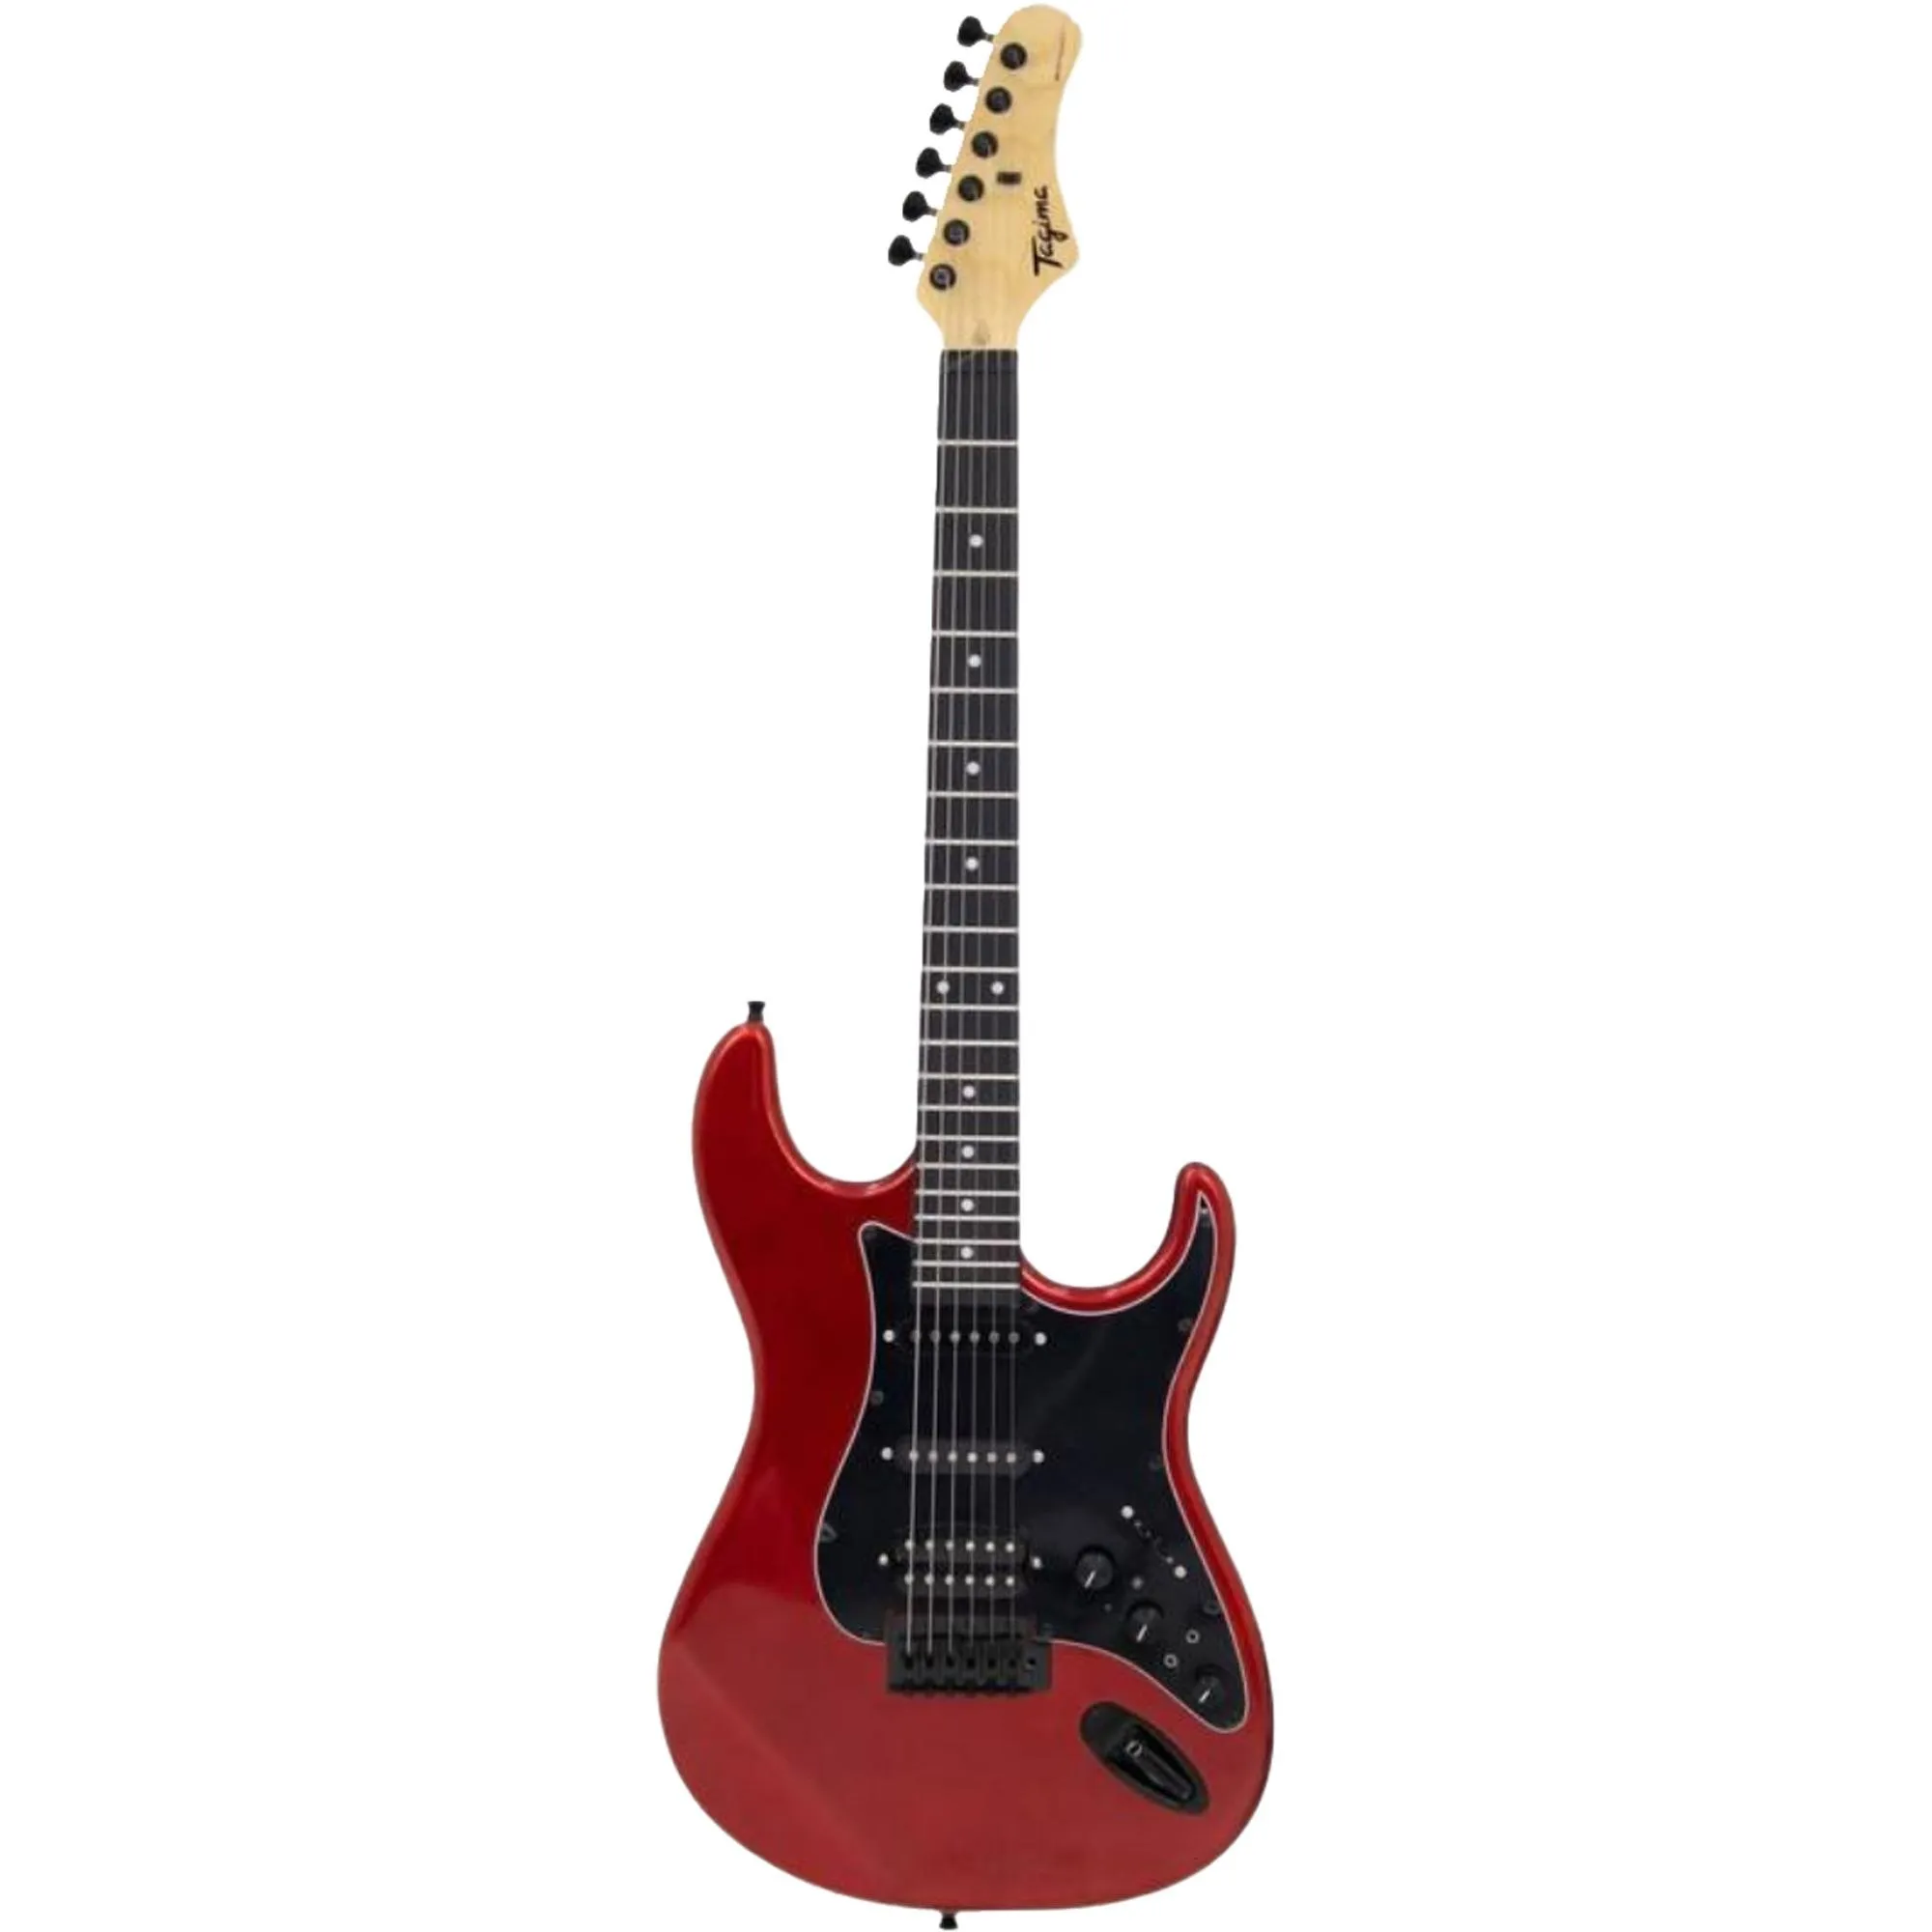 Guitarra Tagima Sixmart Candy Apple por 1.449,99 à vista no boleto/pix ou parcele em até 12x sem juros. Compre na loja Mundomax!